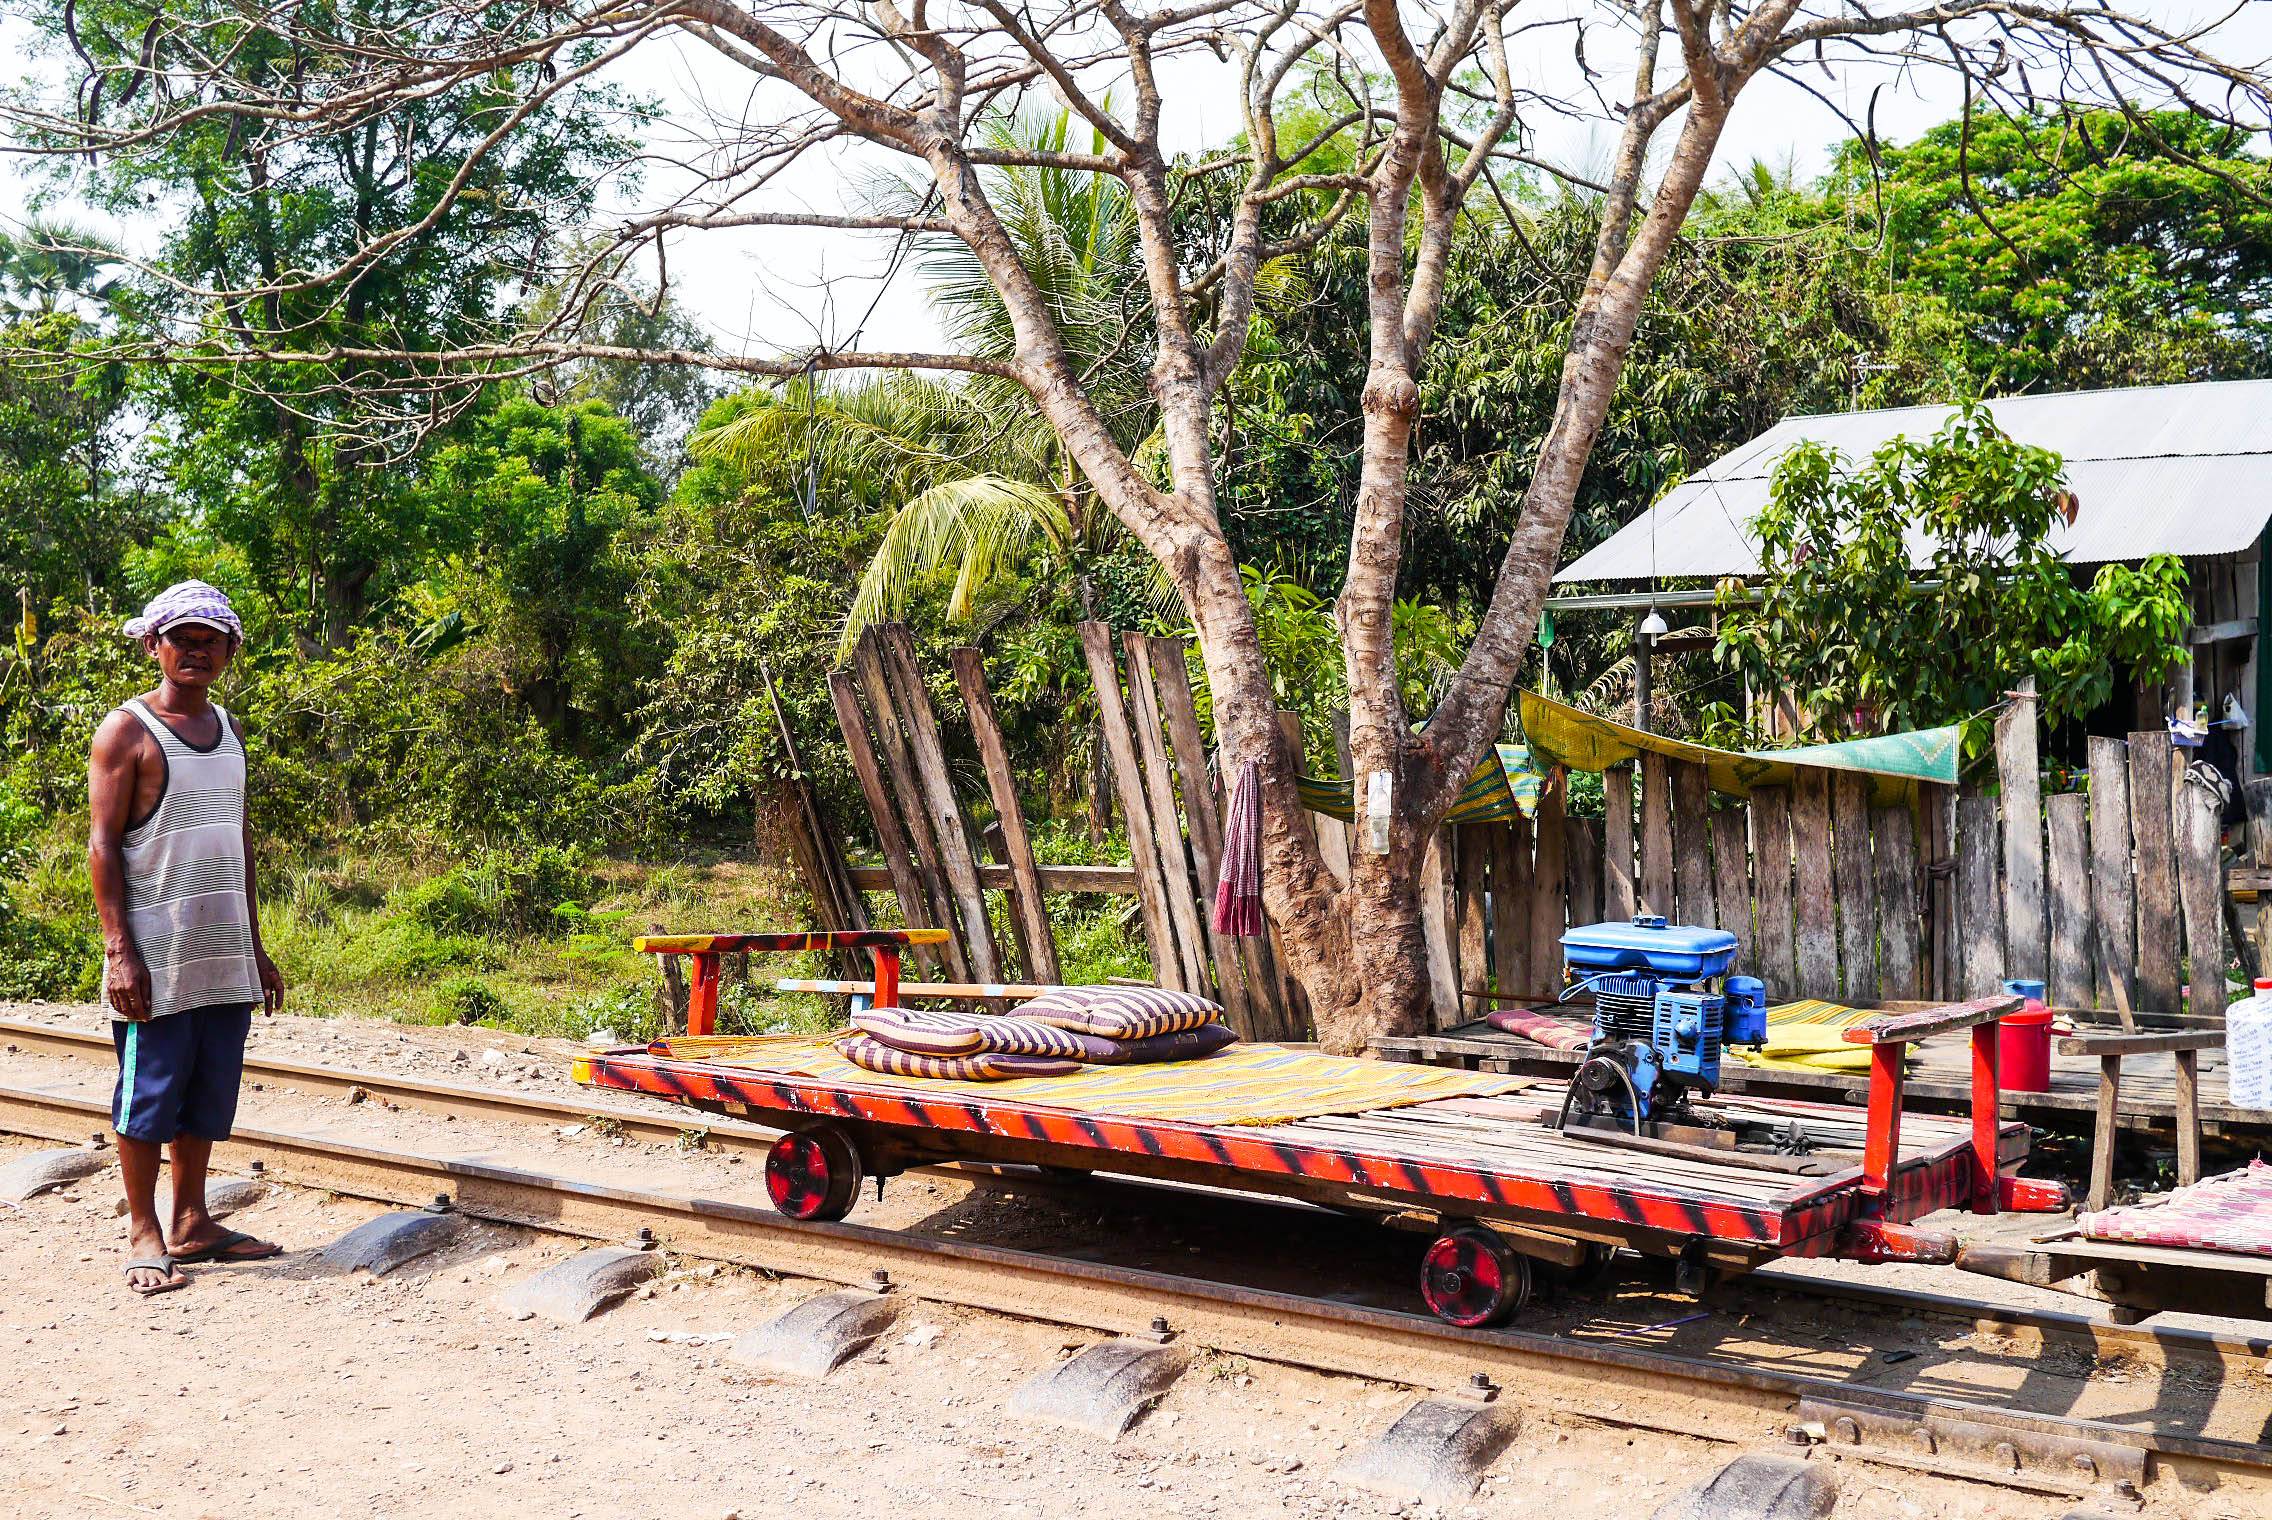 Железнодорожный транспорт в камбоджесодержание а также последние разработки [ править ]